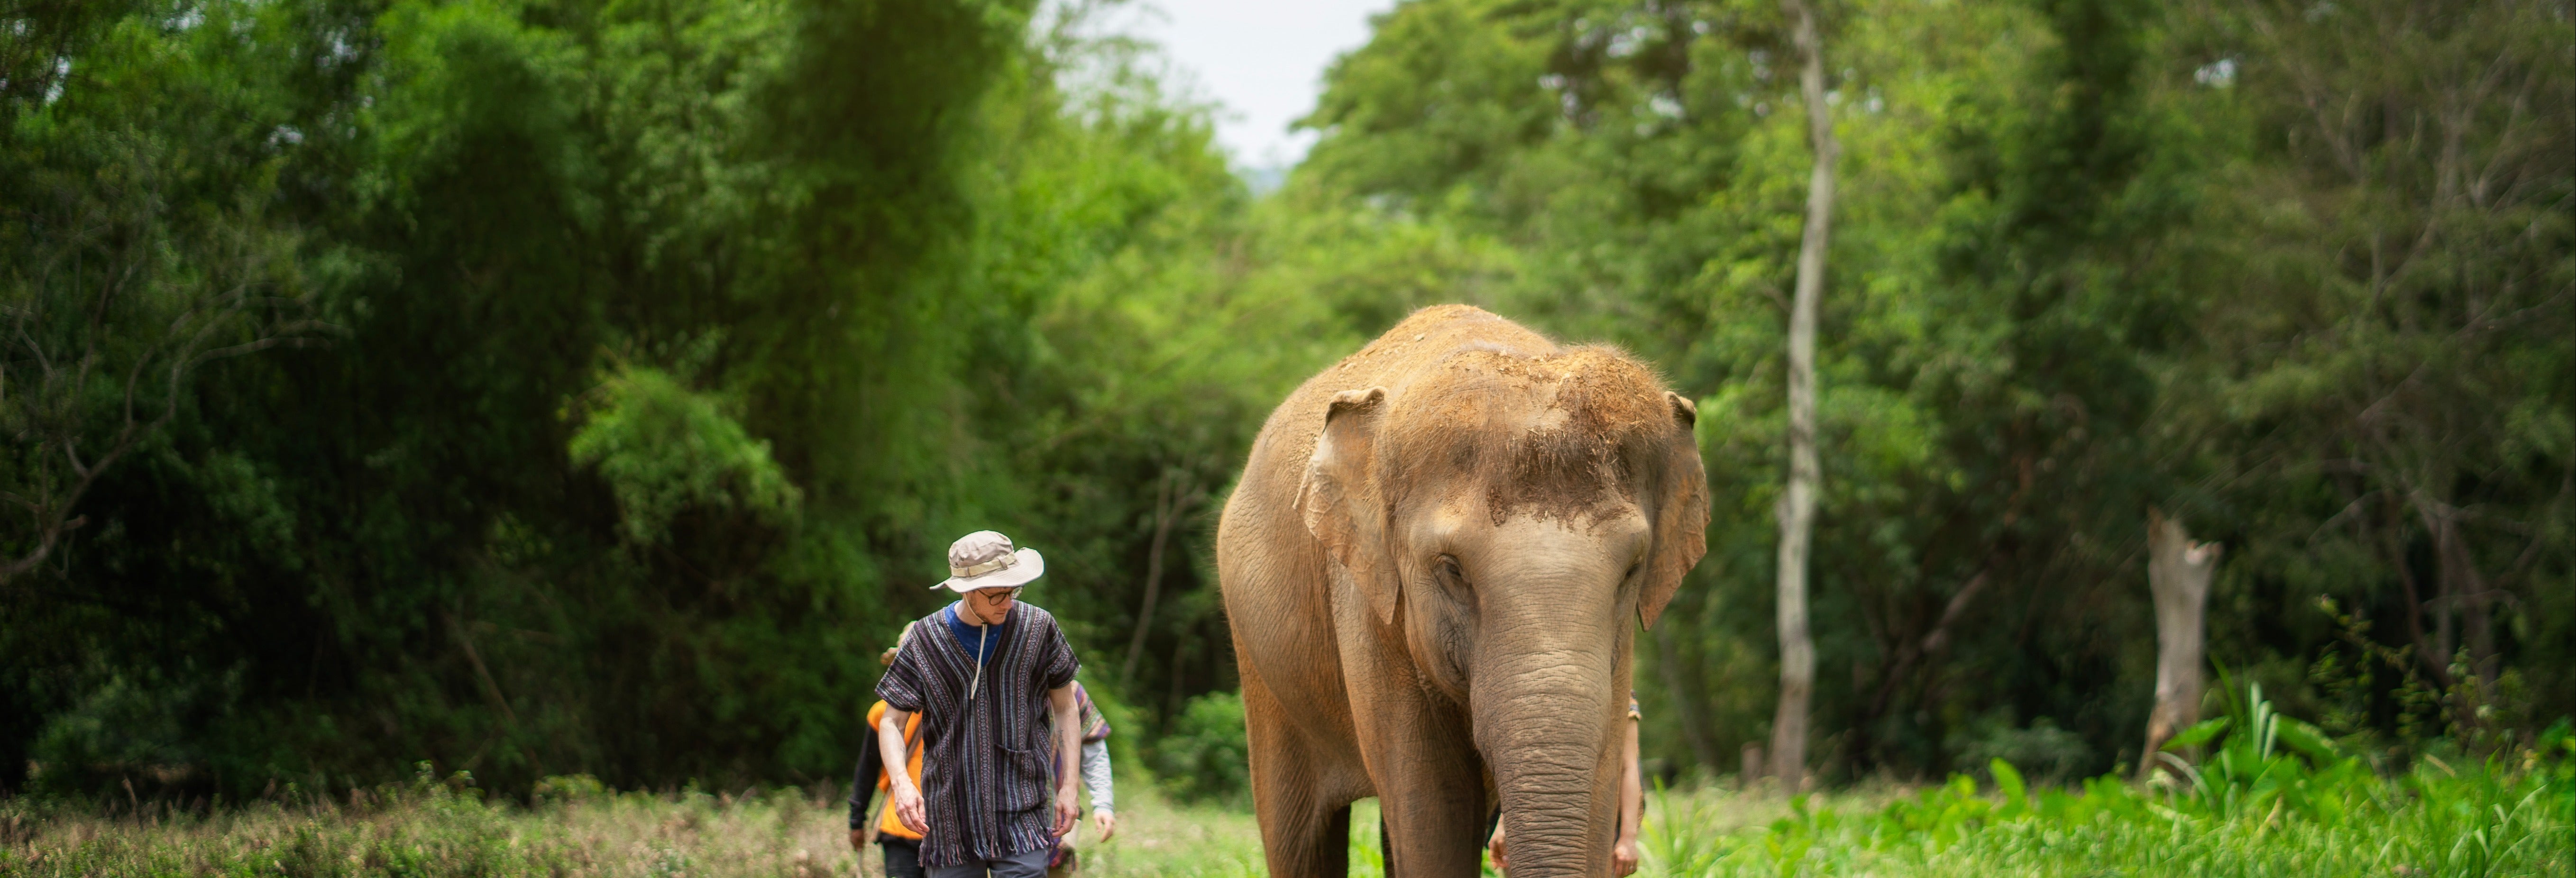 Excursão ao santuário de elefantes